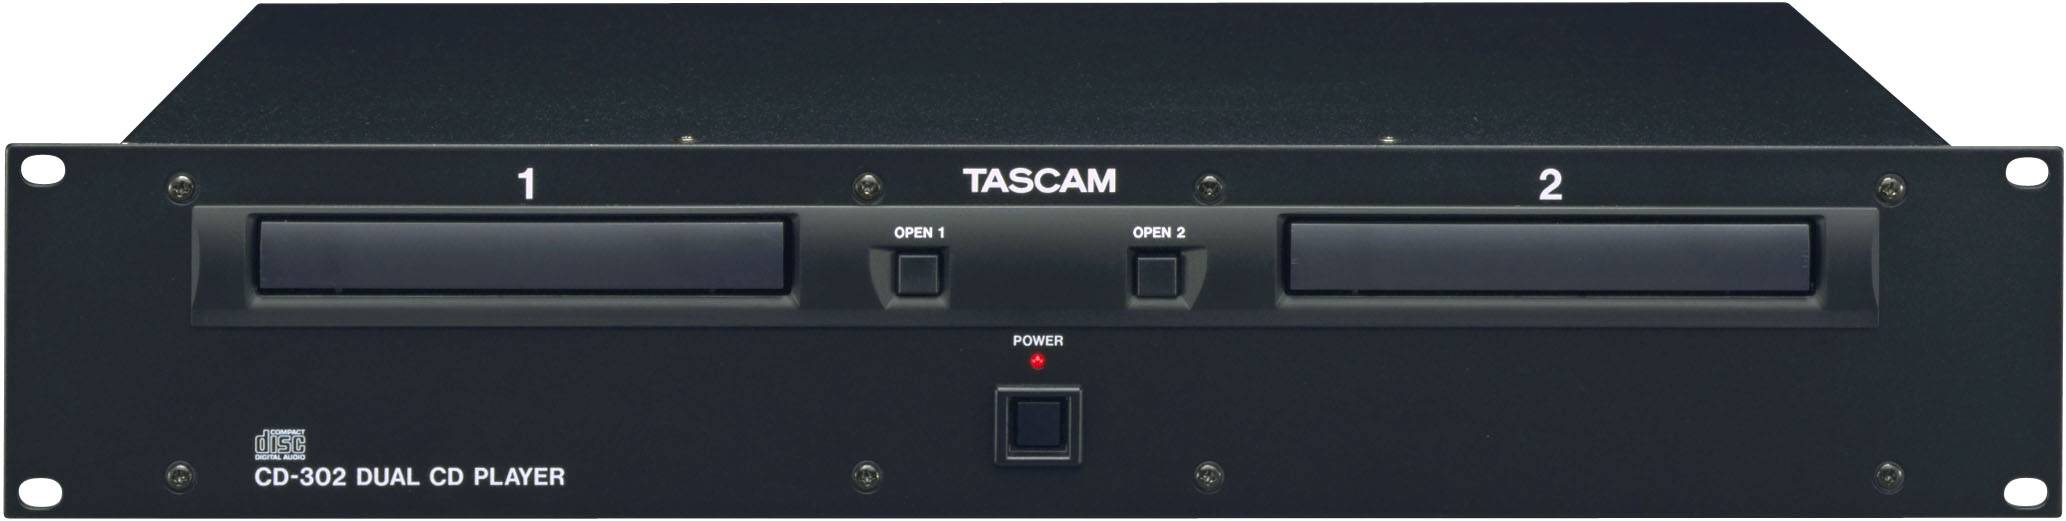 Tascam CD-302